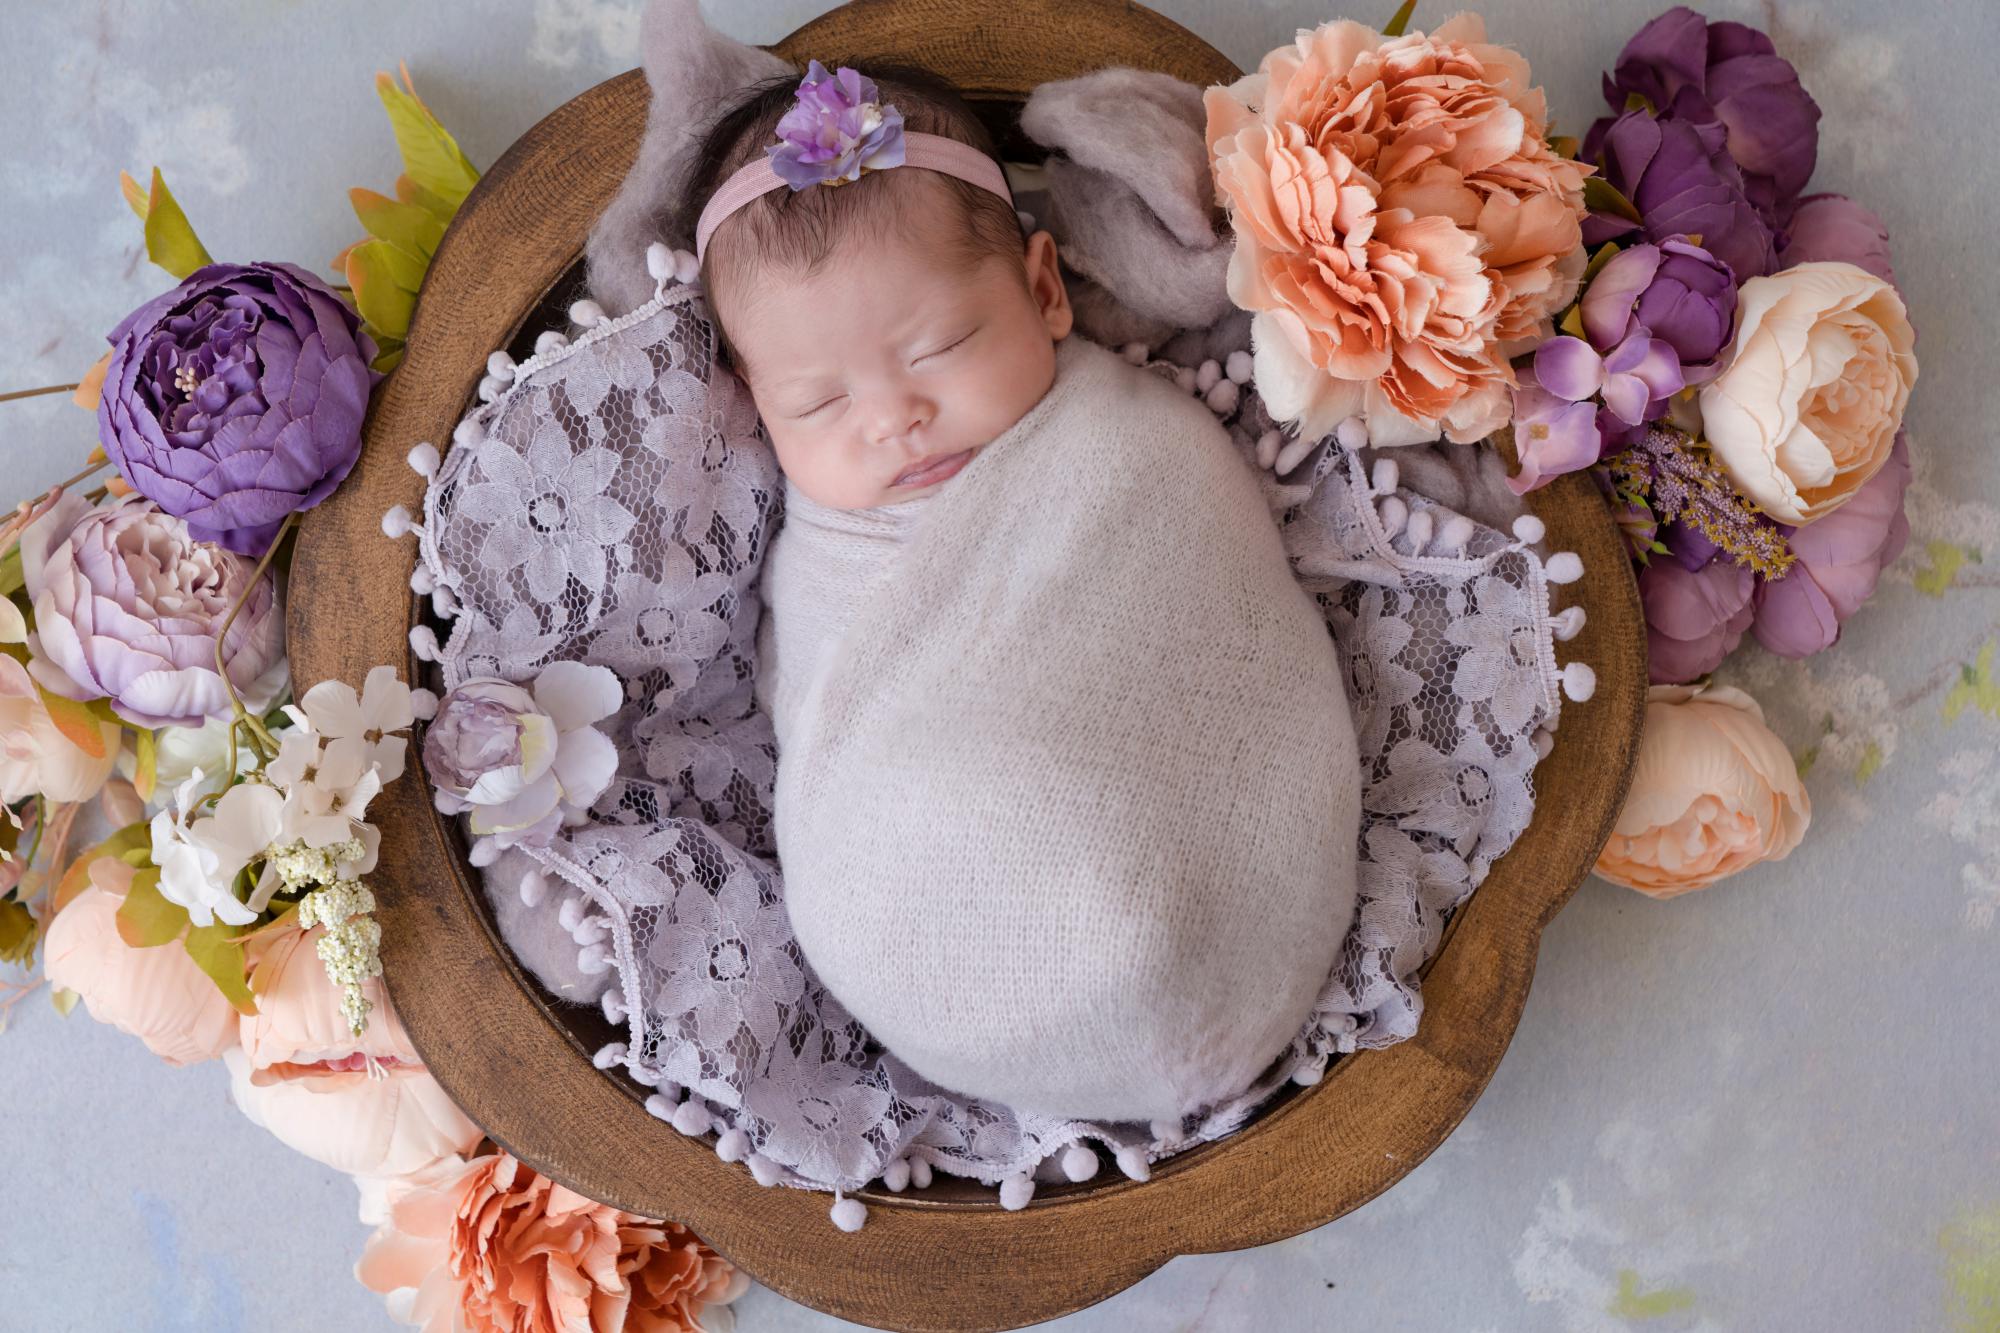 newborn baby in a basket